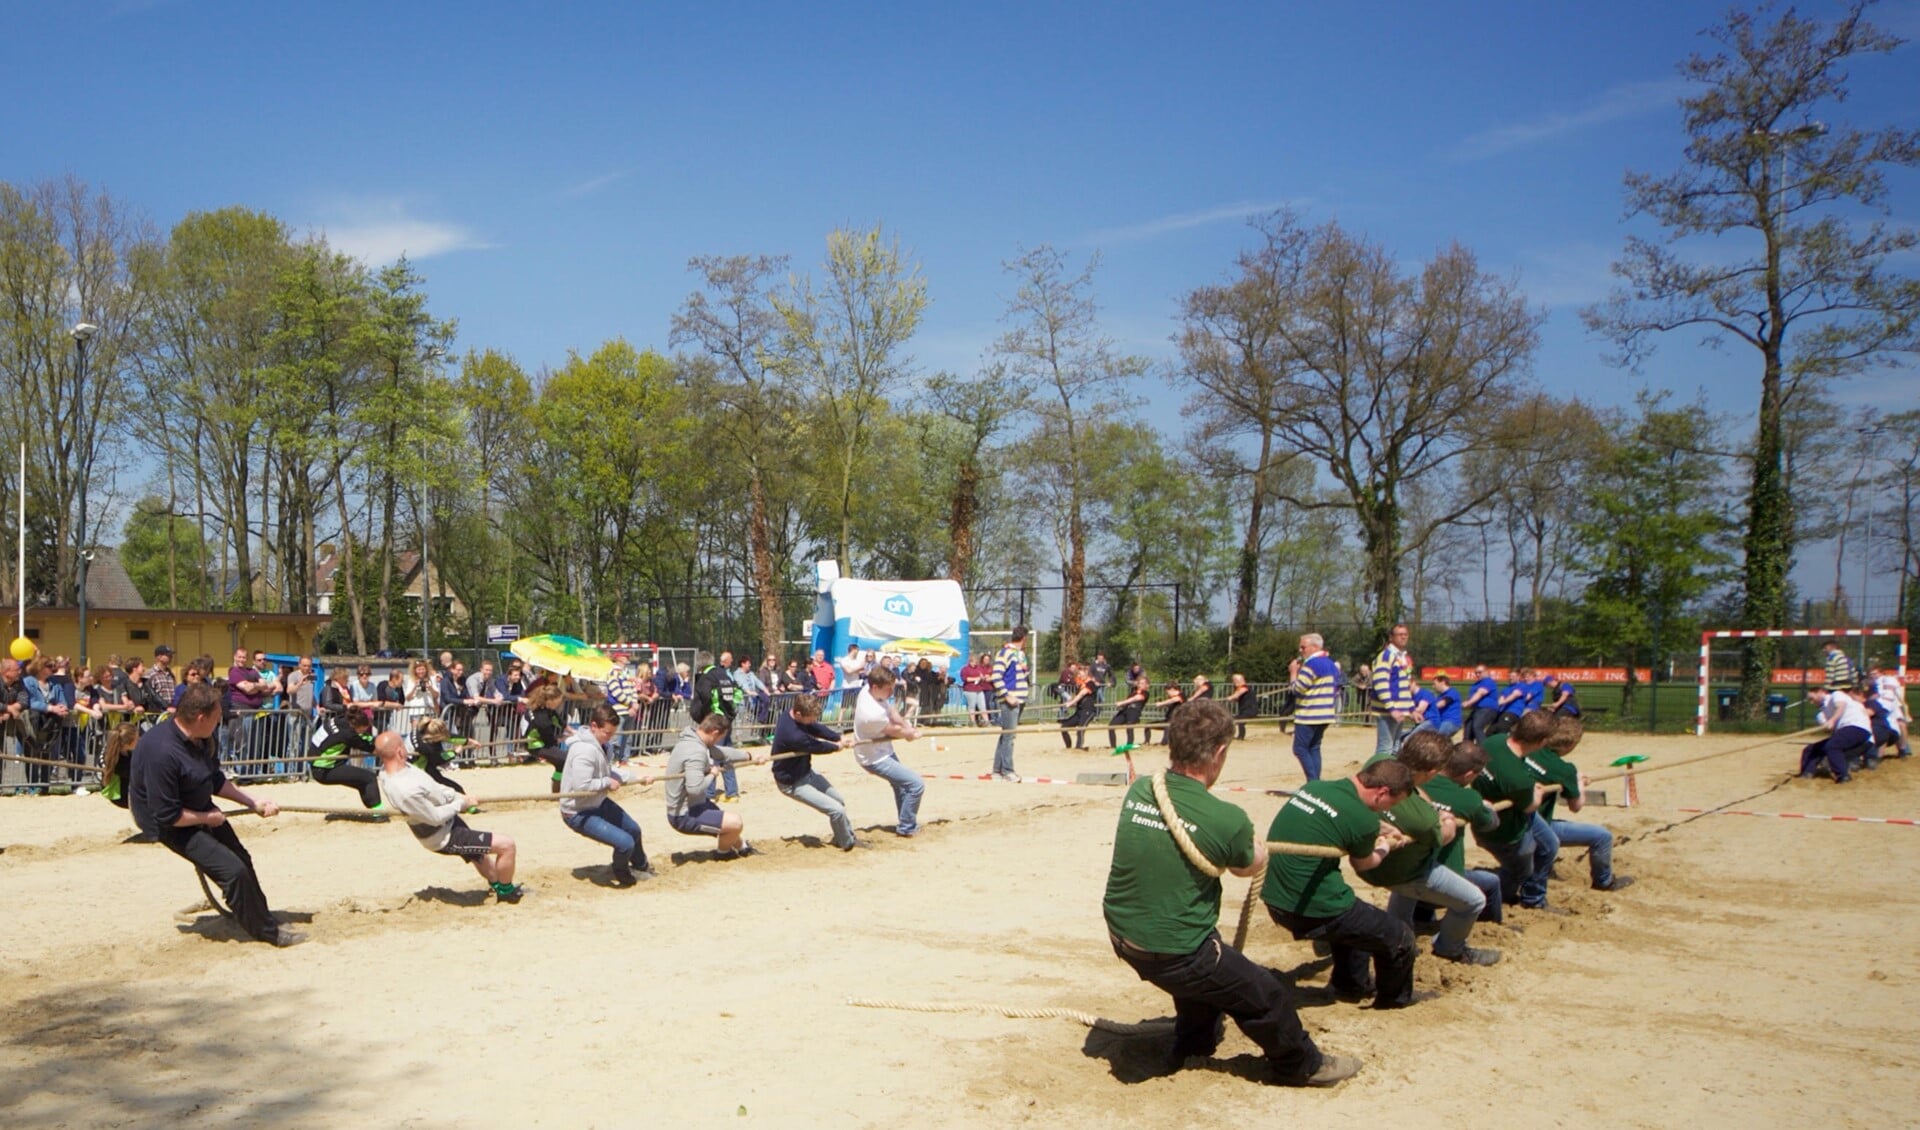 Touwtje organiseerde ter gelegenheid van het jubileum een beachtouwtrektoernooi op de handbalvelden in Blaricum.